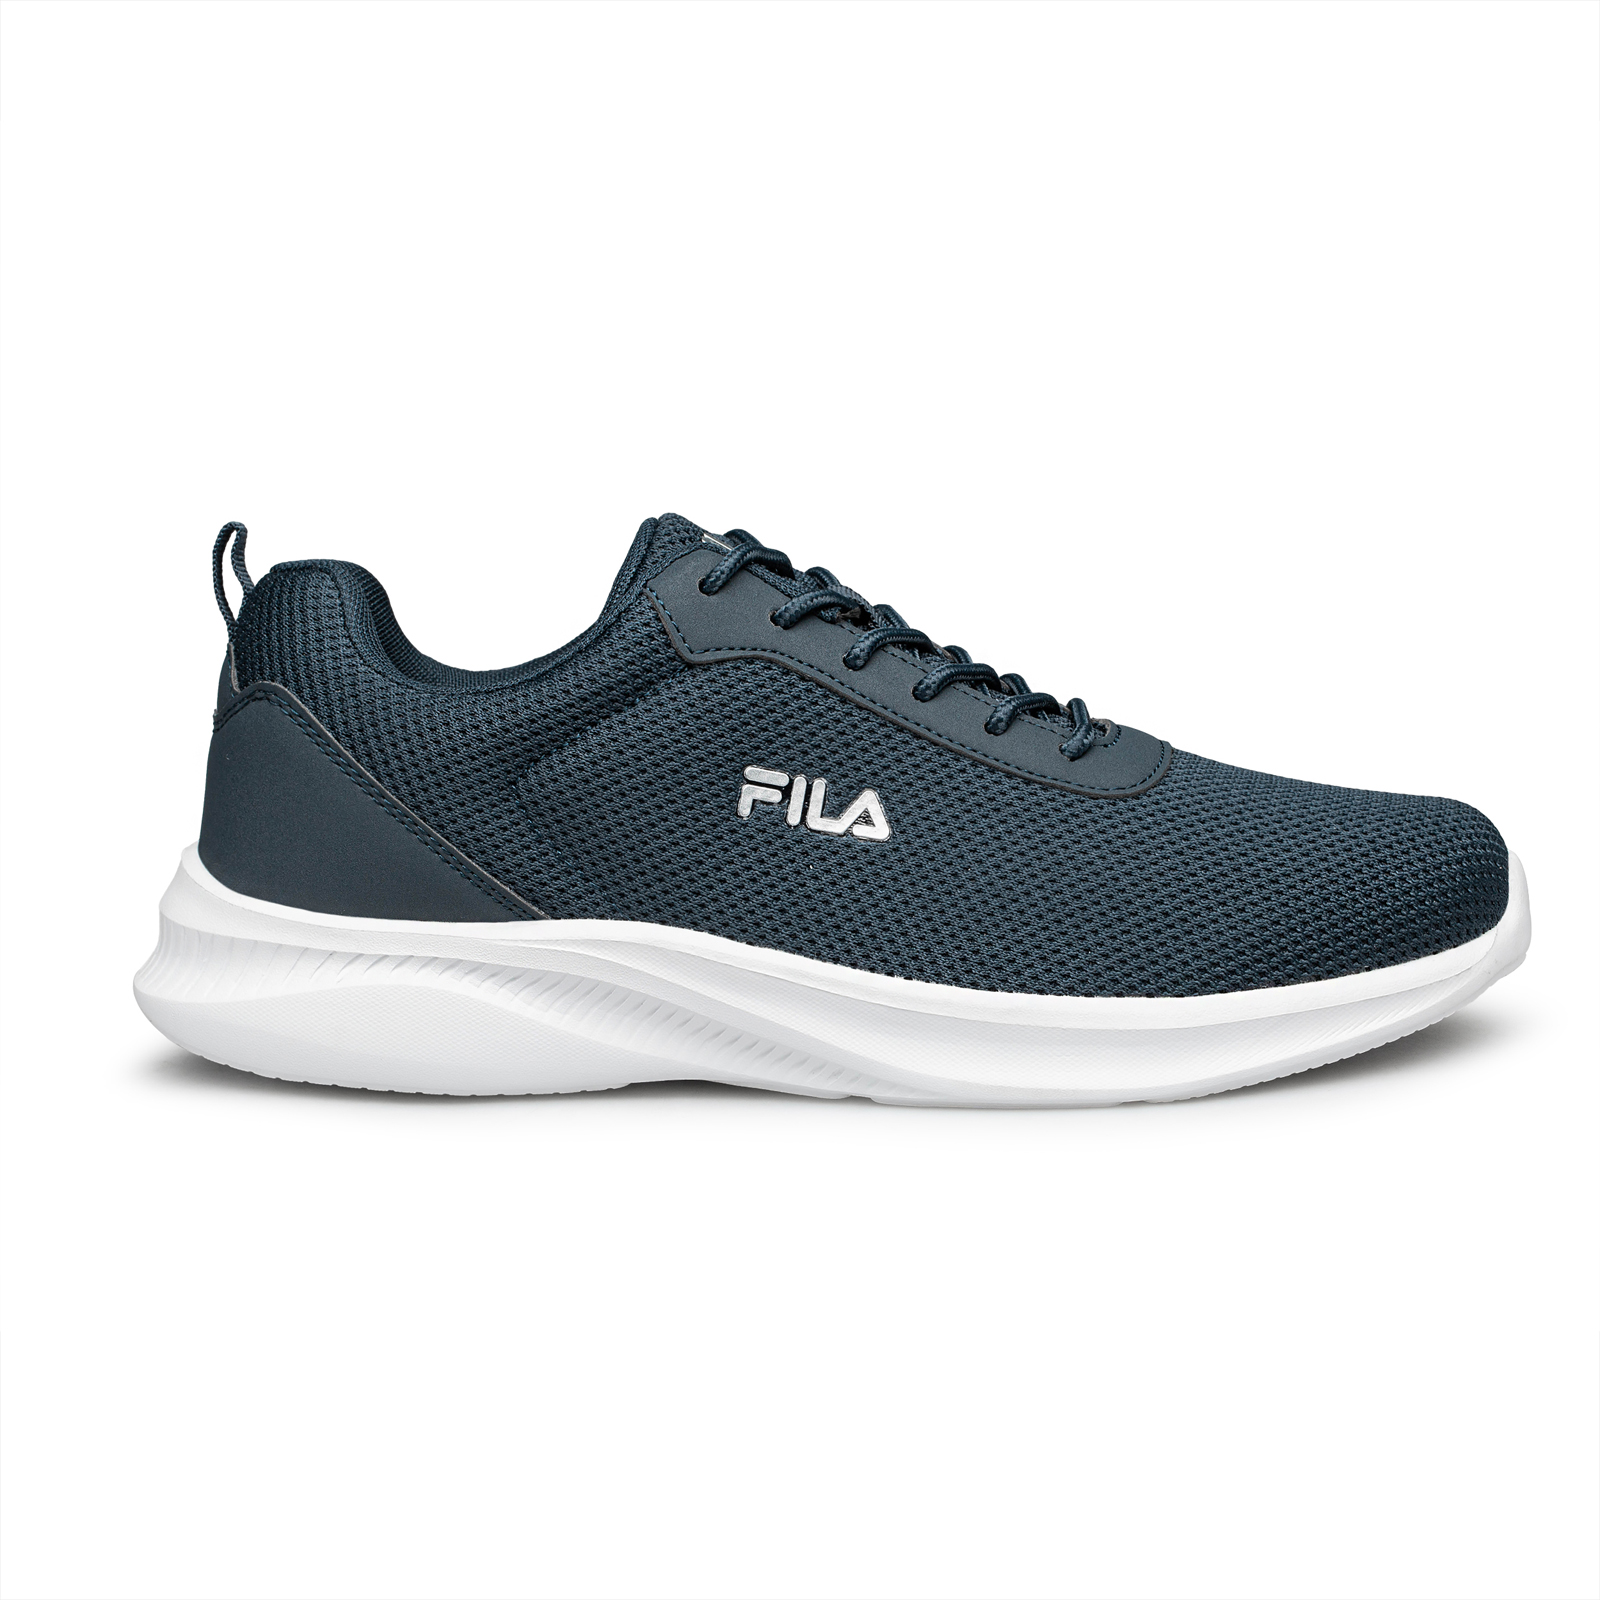 Fila - DORADO 2 FOOTWEAR - DARK BLUE SILVER Ανδρικά > Παπούτσια > Αθλητικά > Παπούτσι Low Cut